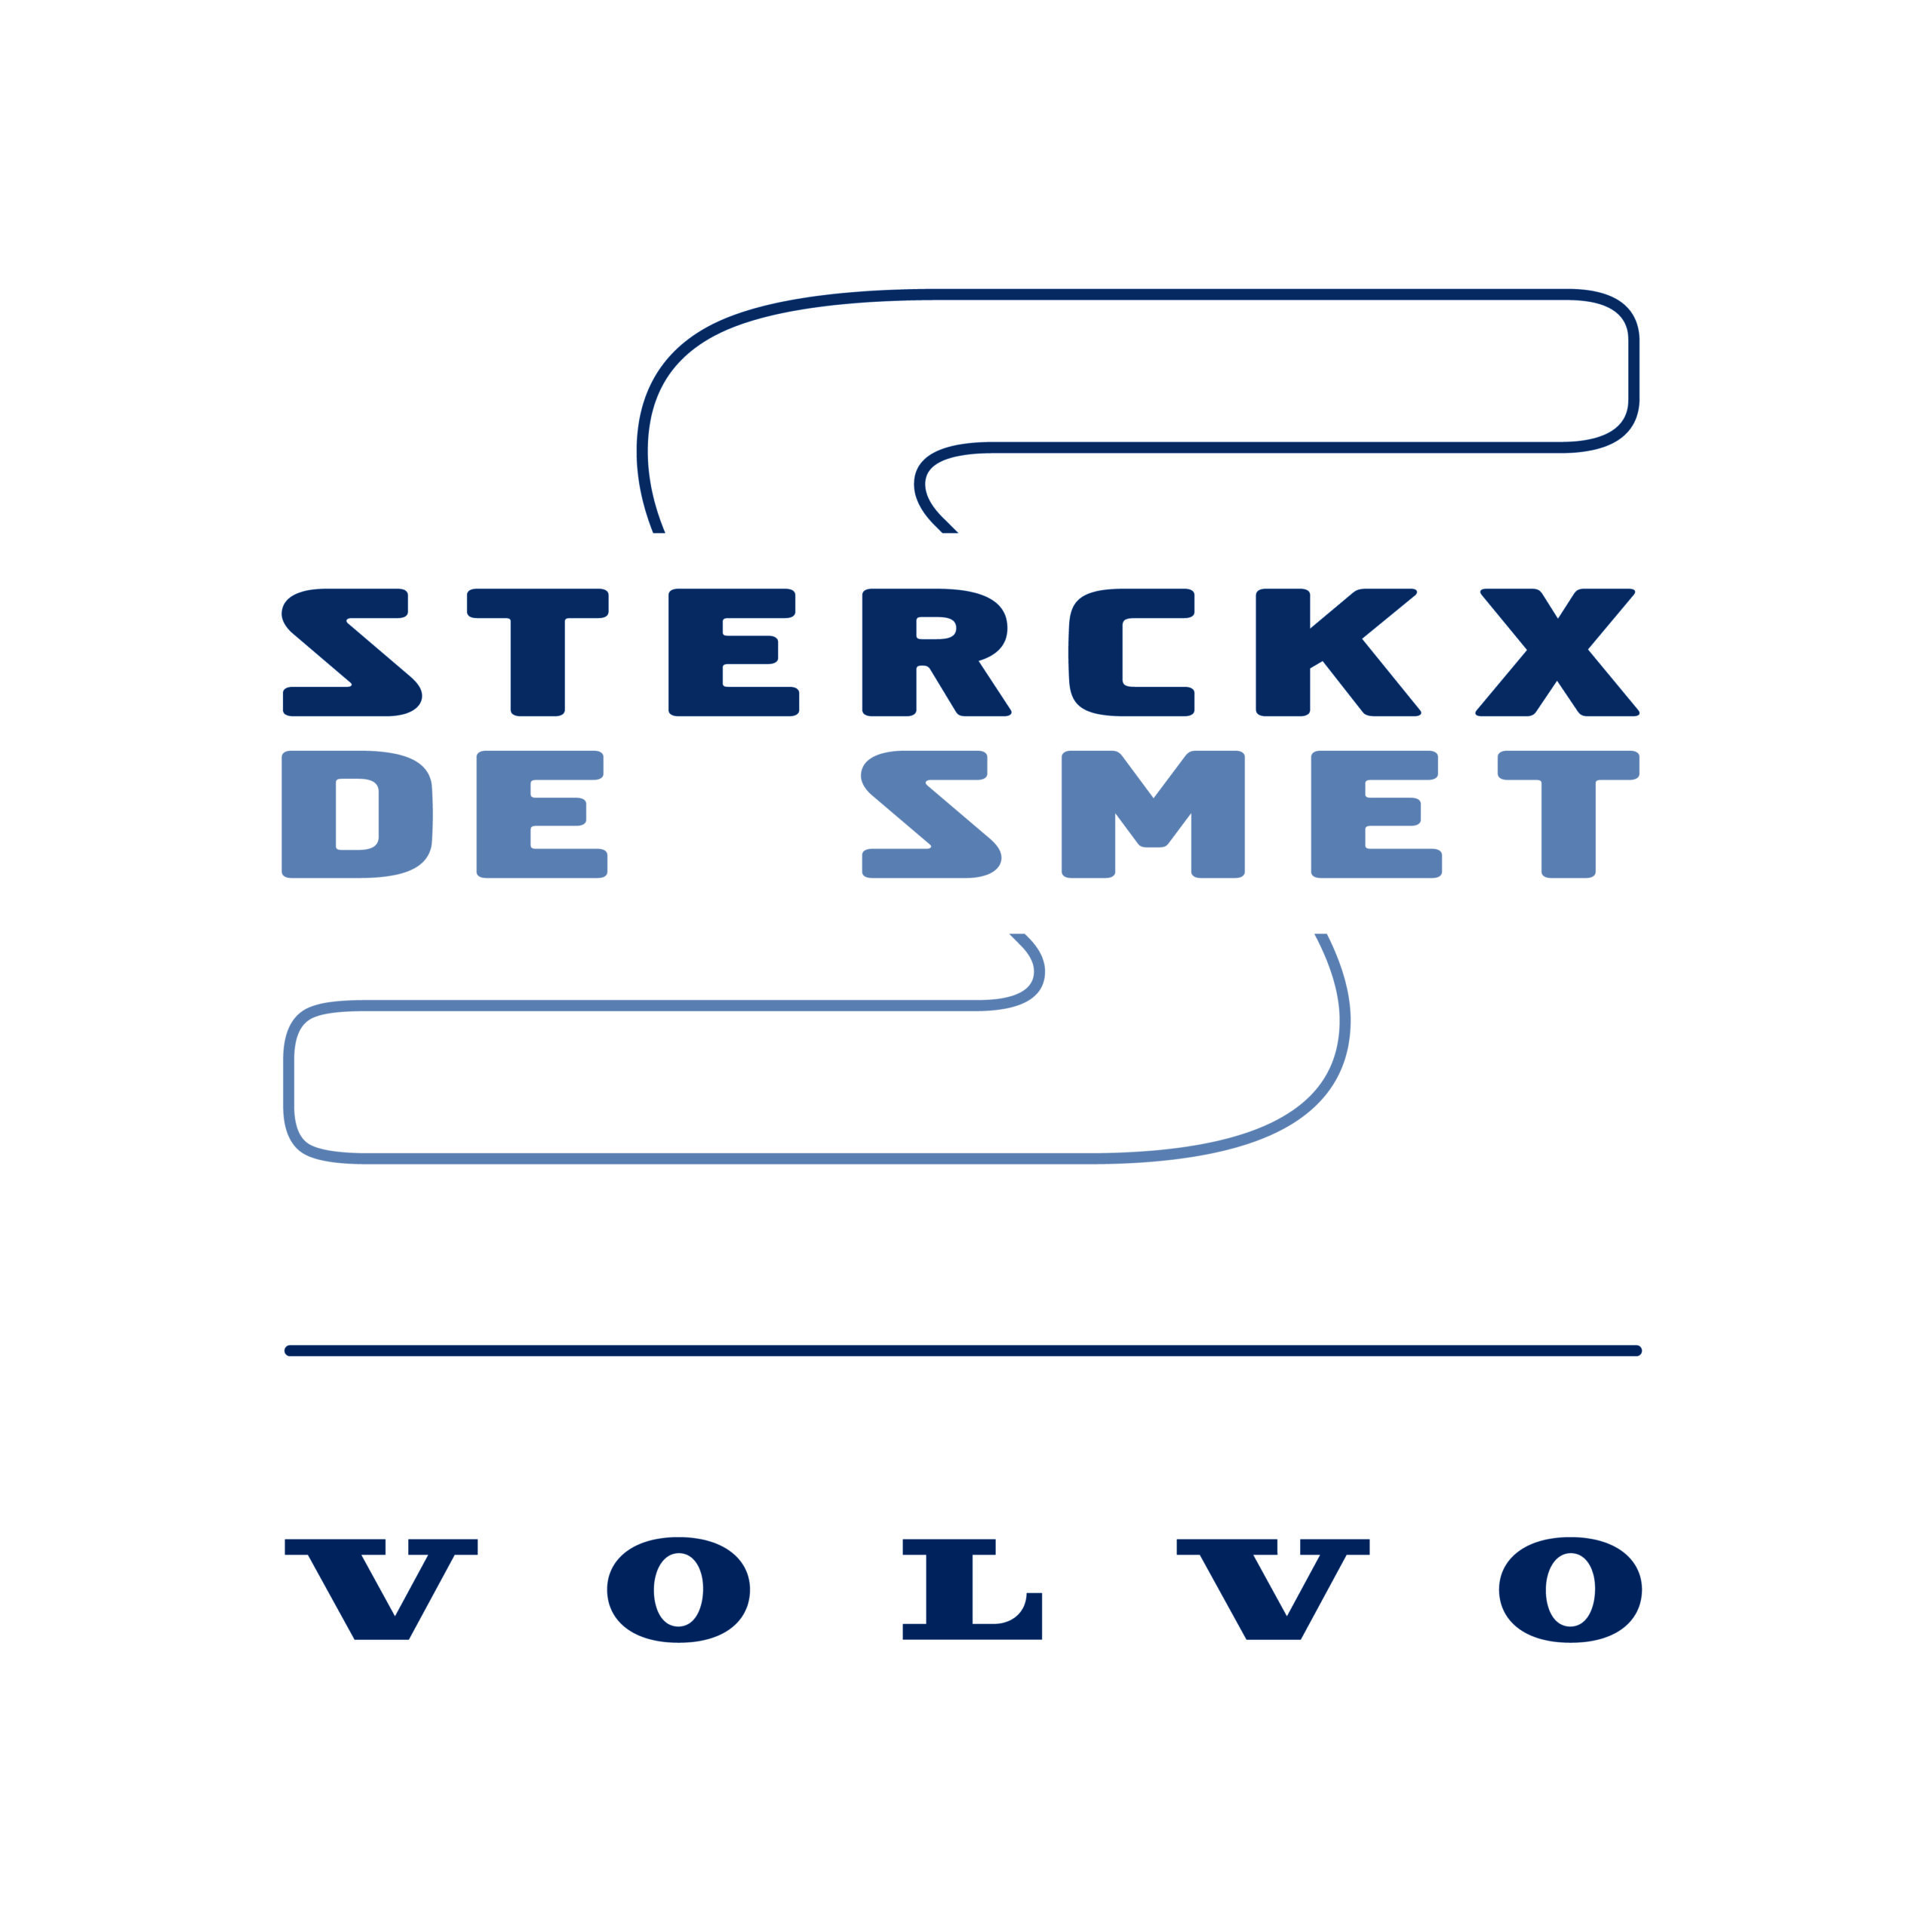 Sterckx-De Smet logoCMYK_volvoV_kleur_volvoV_kleur